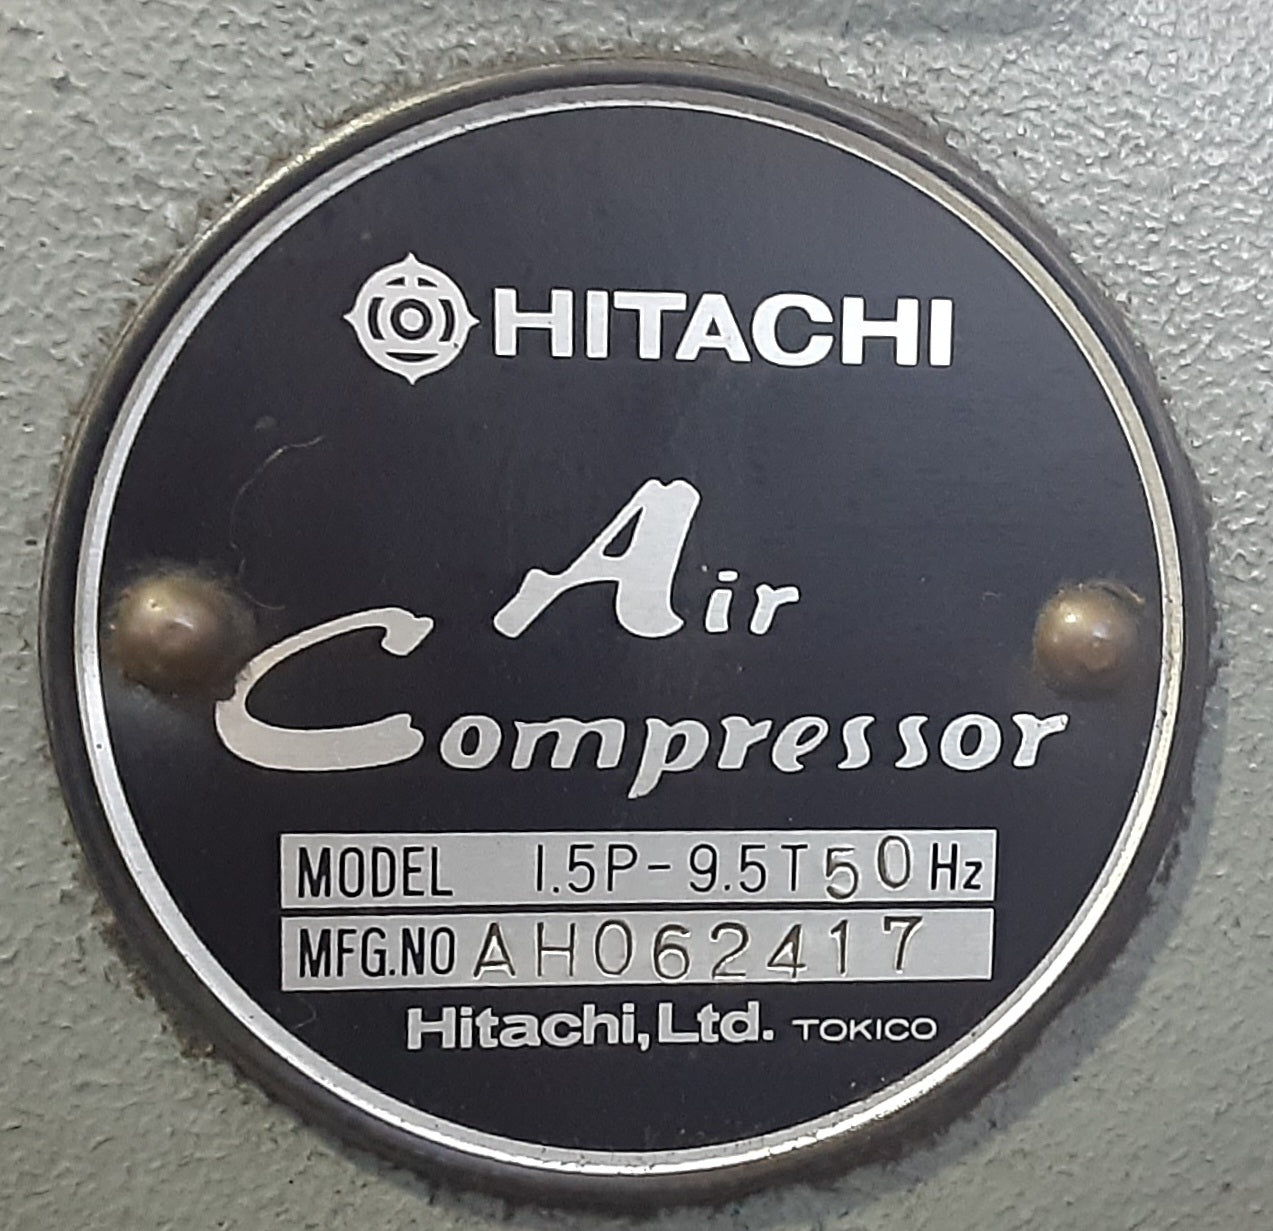 日立製 コンプレッサー 小型空気圧縮機 ベビコン 1.5P-9.5T 50Hz 最高圧力9.5kg/cm2 hitachi1-15p95t-5912